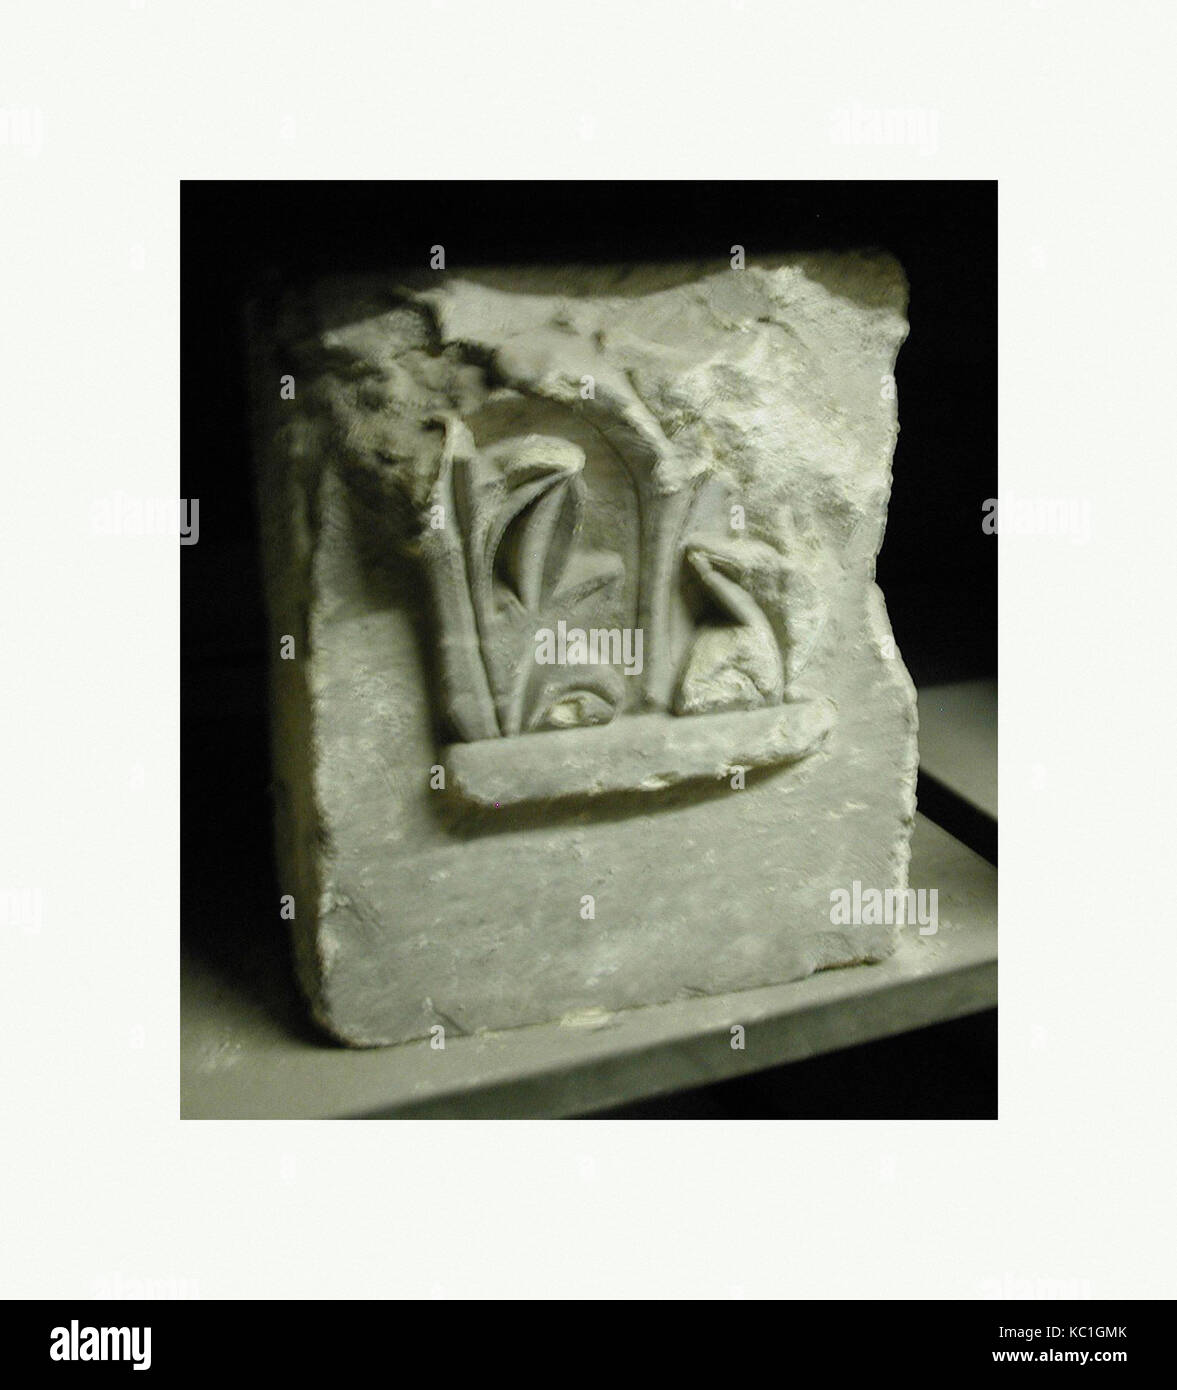 Capitale, 6th-VII secolo, trovato in Egitto, Saqqara, calcare, H. 12 3/16 in. (31 cm), scultura, nel 500s Apa (padre) Jeremias Foto Stock